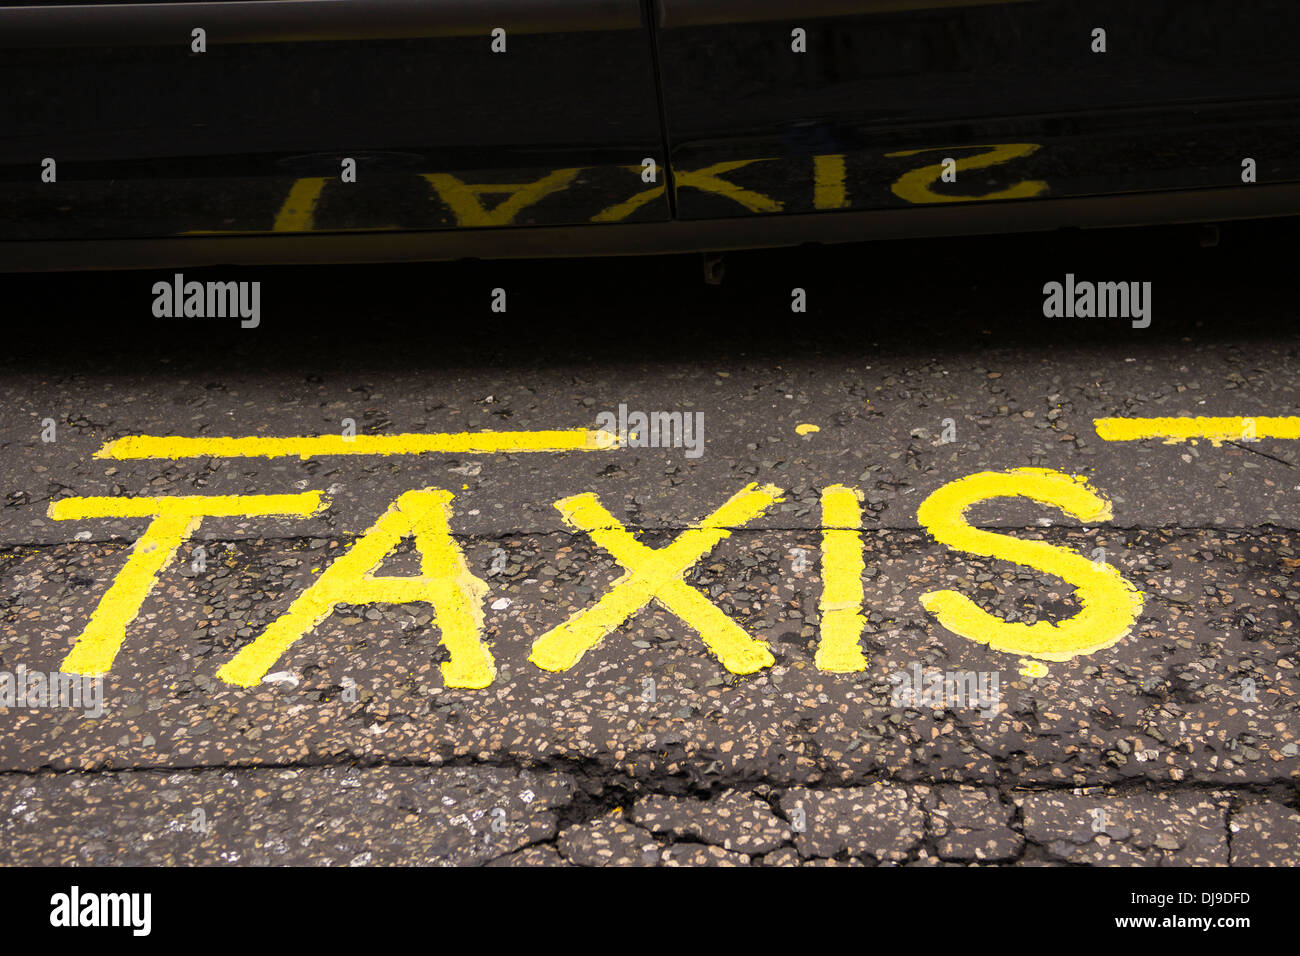 Una pintada de color amarillo del signo 'Taxi' sobre el asfalto se refleja en la puerta de un taxi negro de Londres. Foto de stock